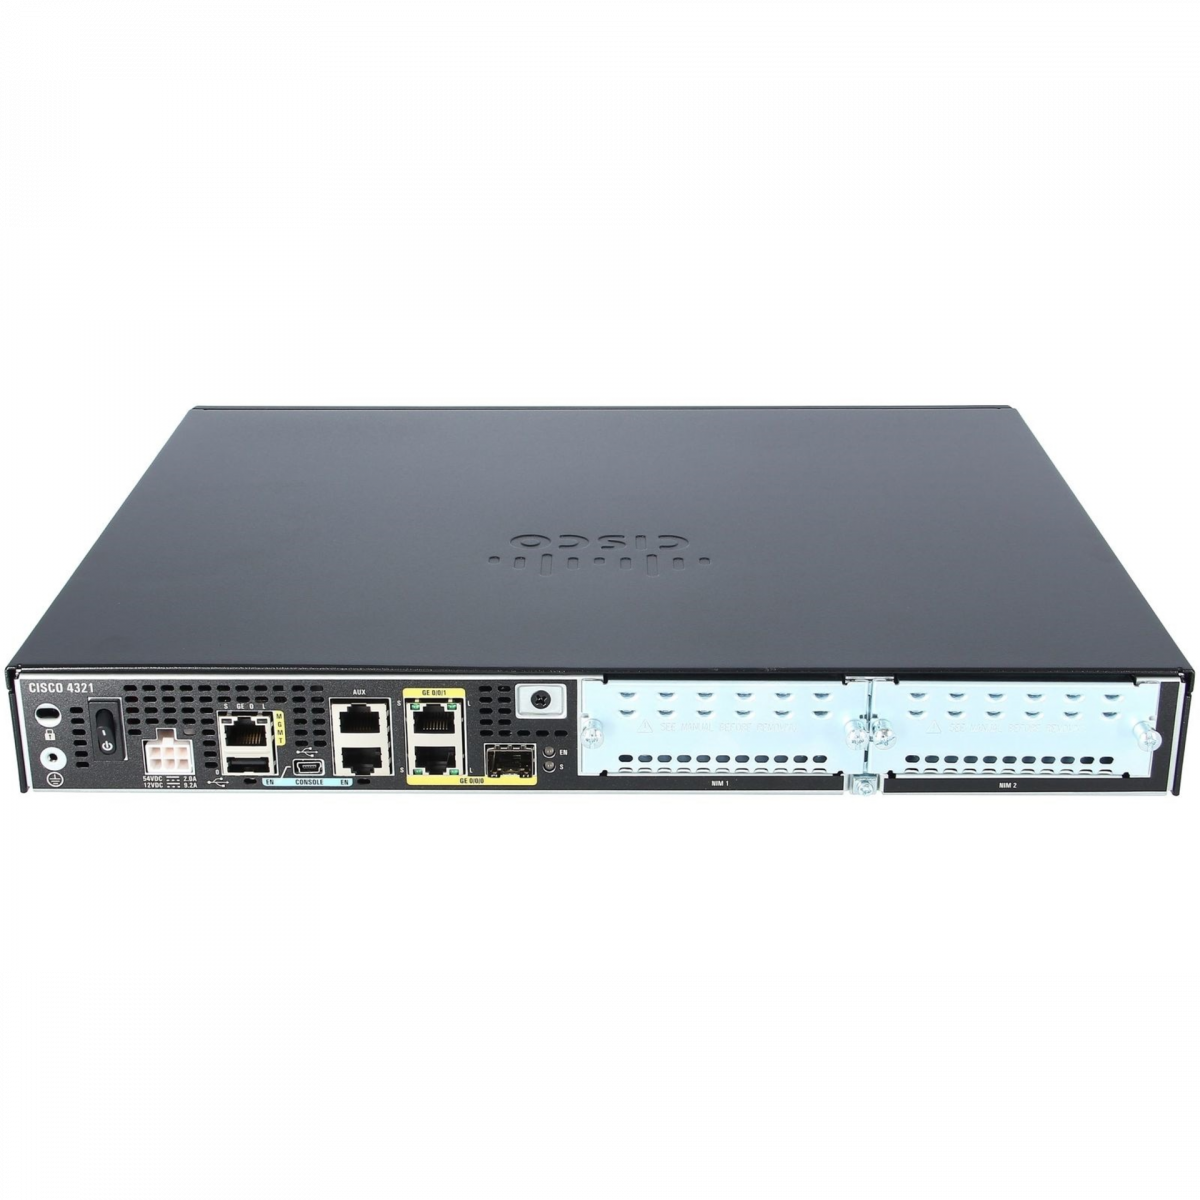 Маршрутизатор Cisco ISR4321 c набором функционала PKG2